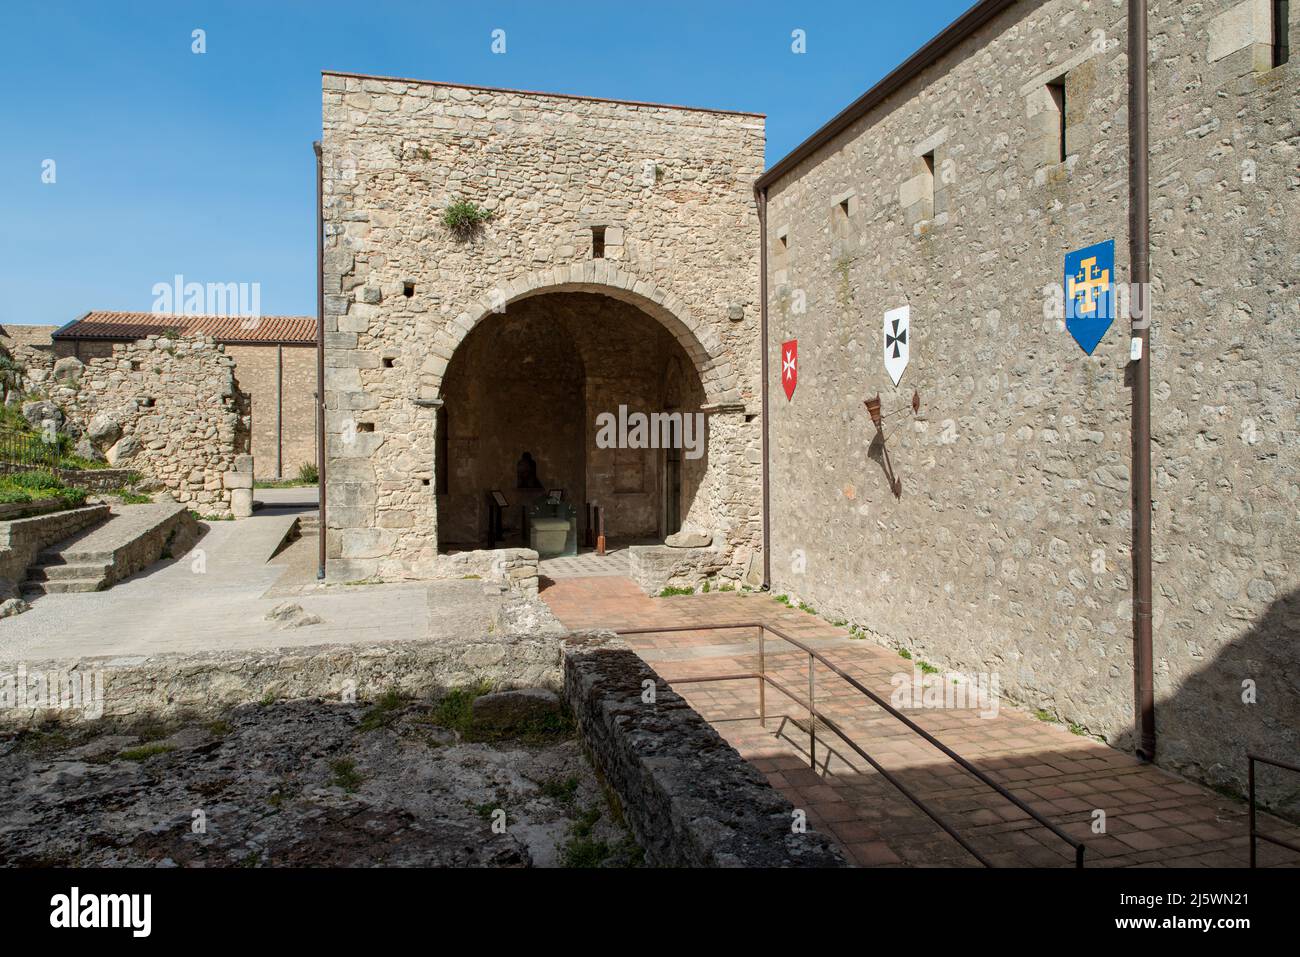 castello medievale - Paese di Montalbano Elicona, provincia di Messina, borgo dei borghi 2015, splendido borgo medievale molto caratteristico Foto de stock